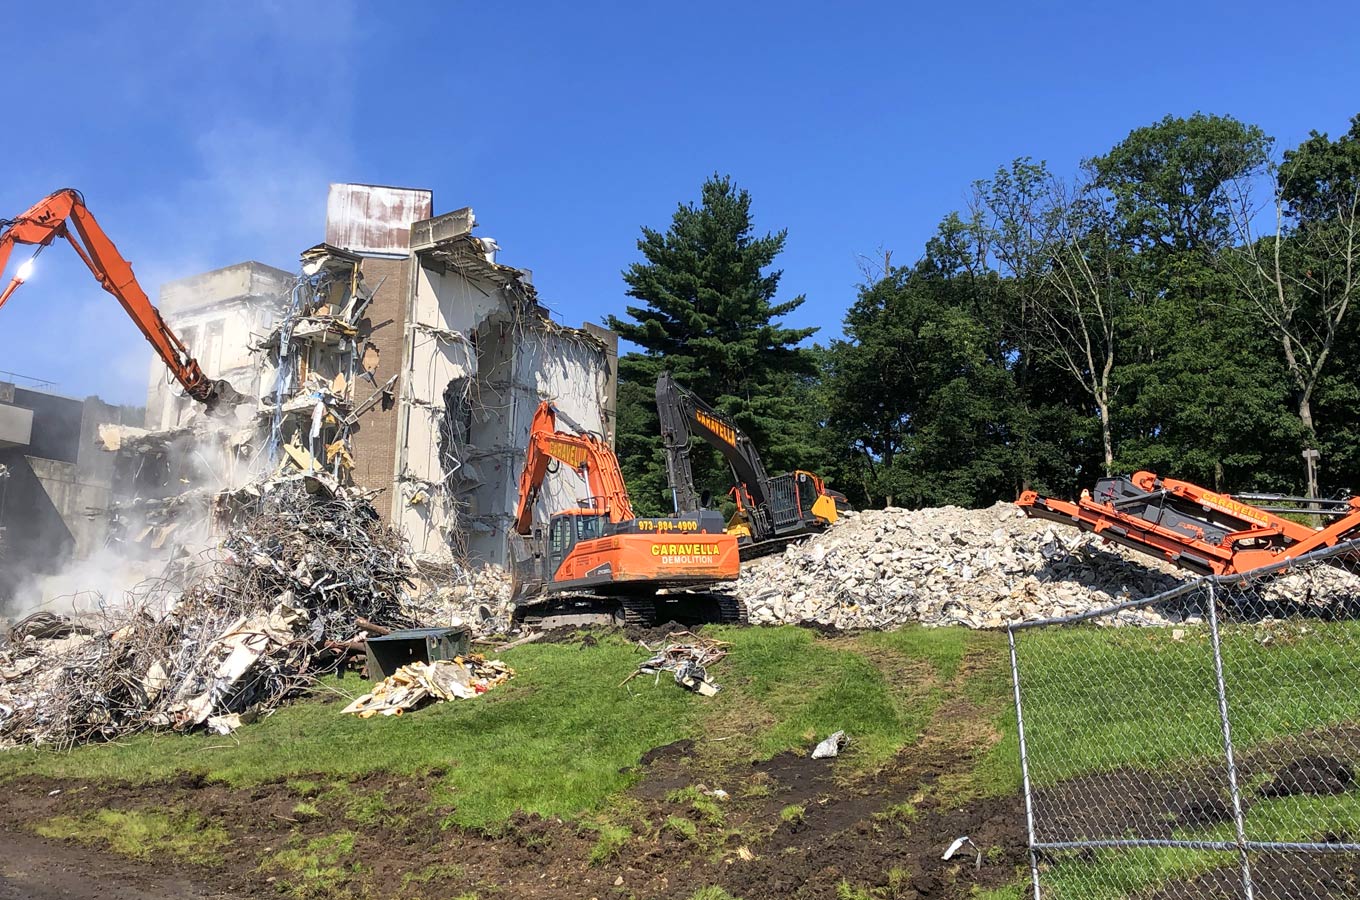 Demolition Services in Toms River, NJ | Caravella Demolition